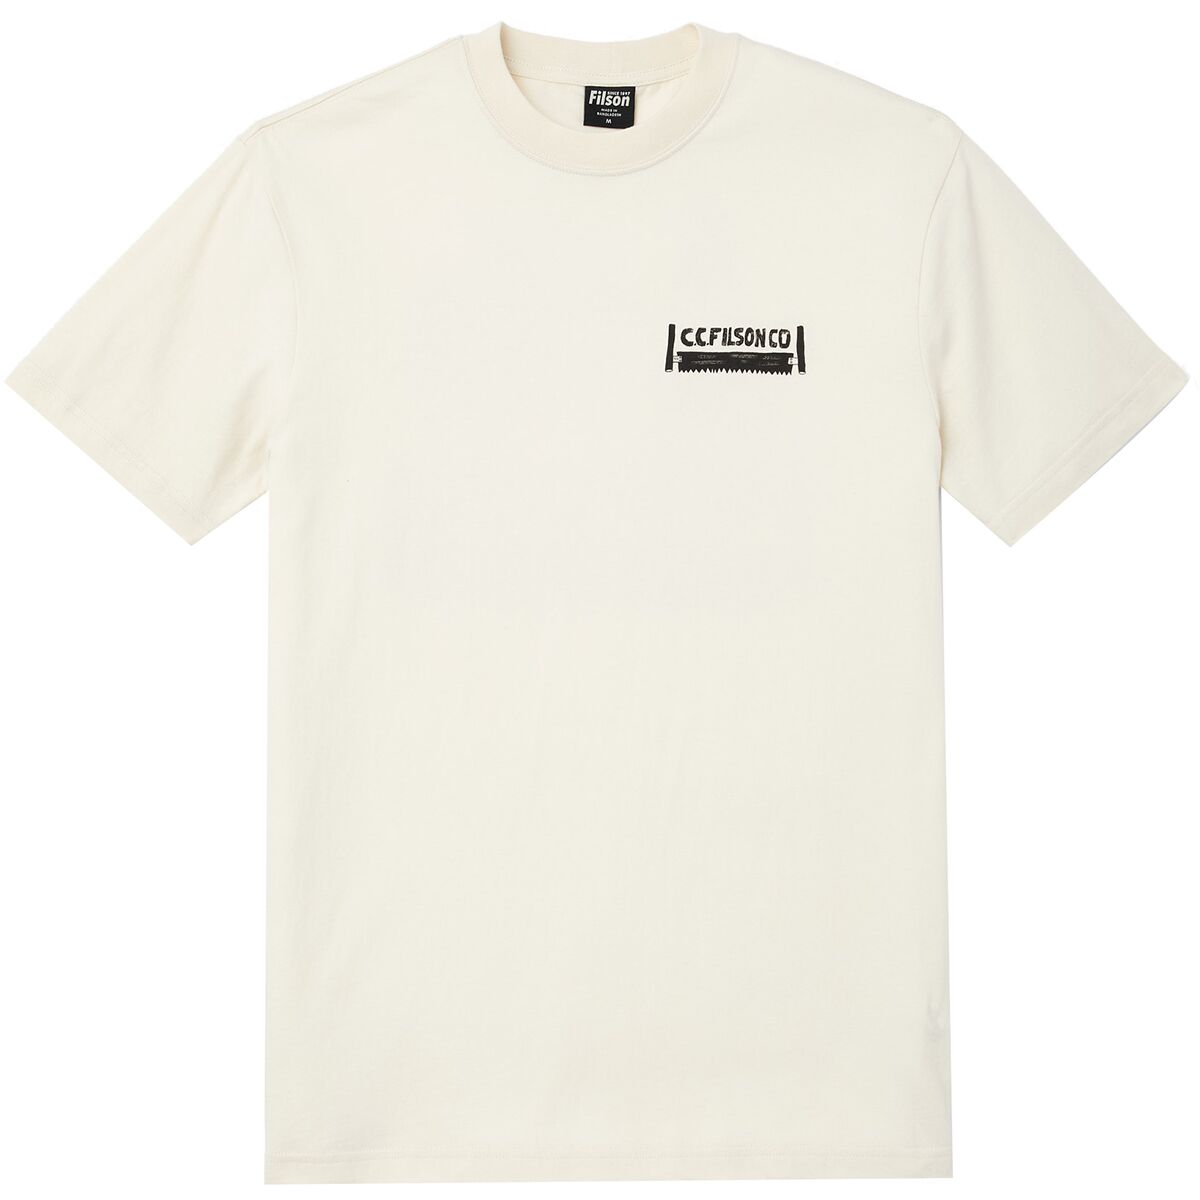 Ranger T-Shirt : Buy Online